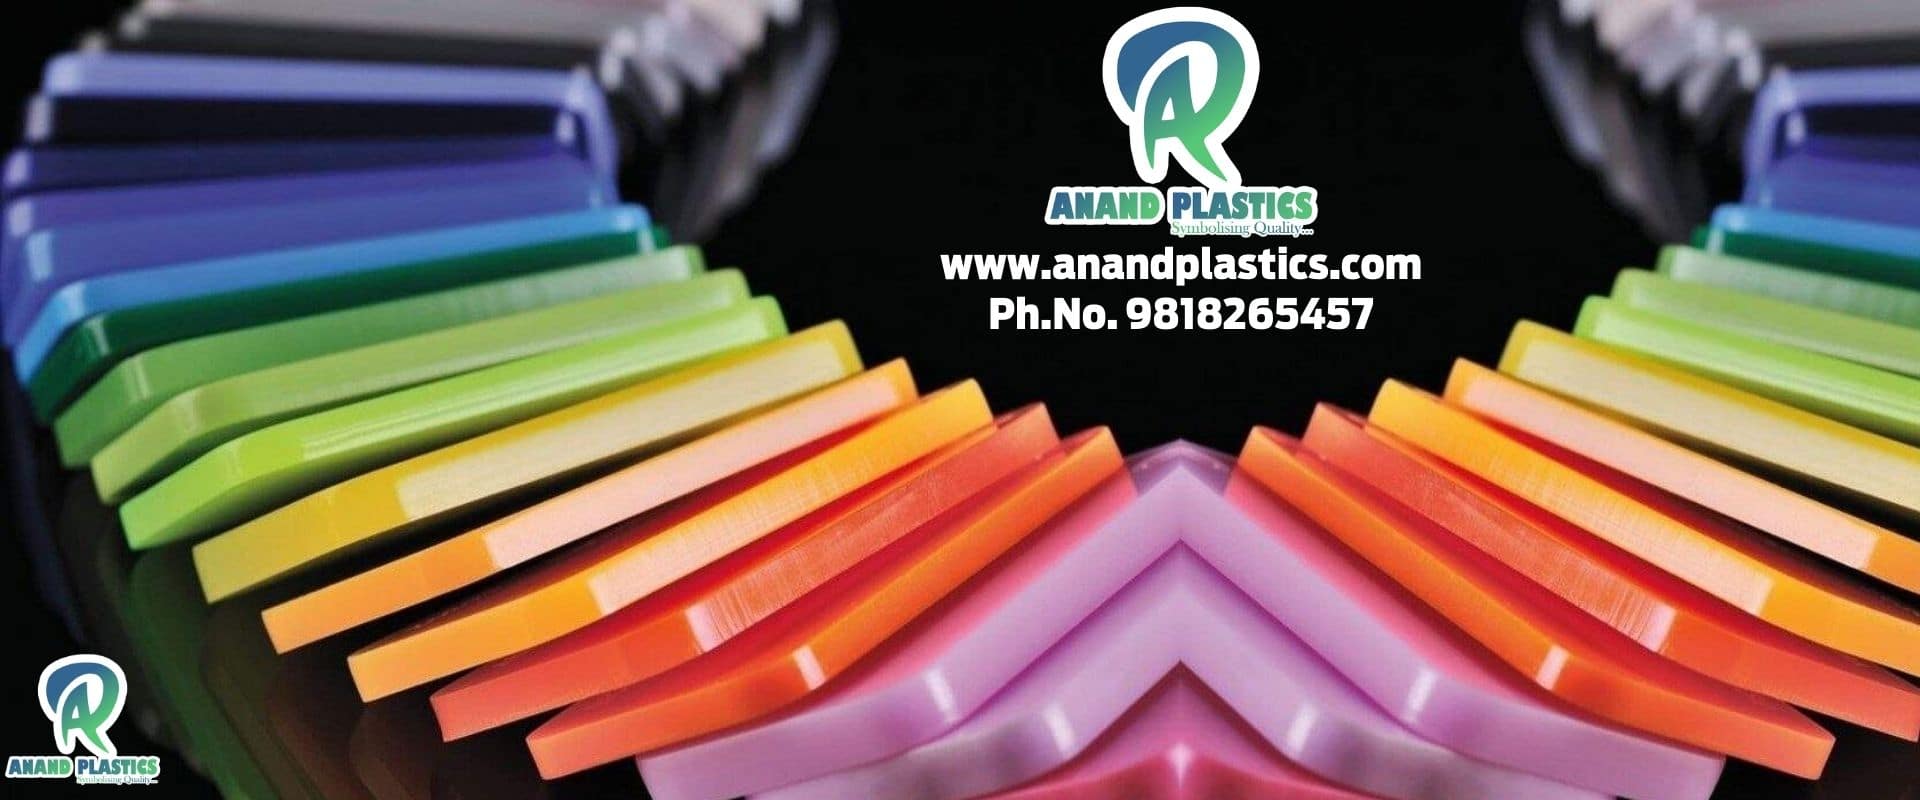 (c) Anandplastics.com